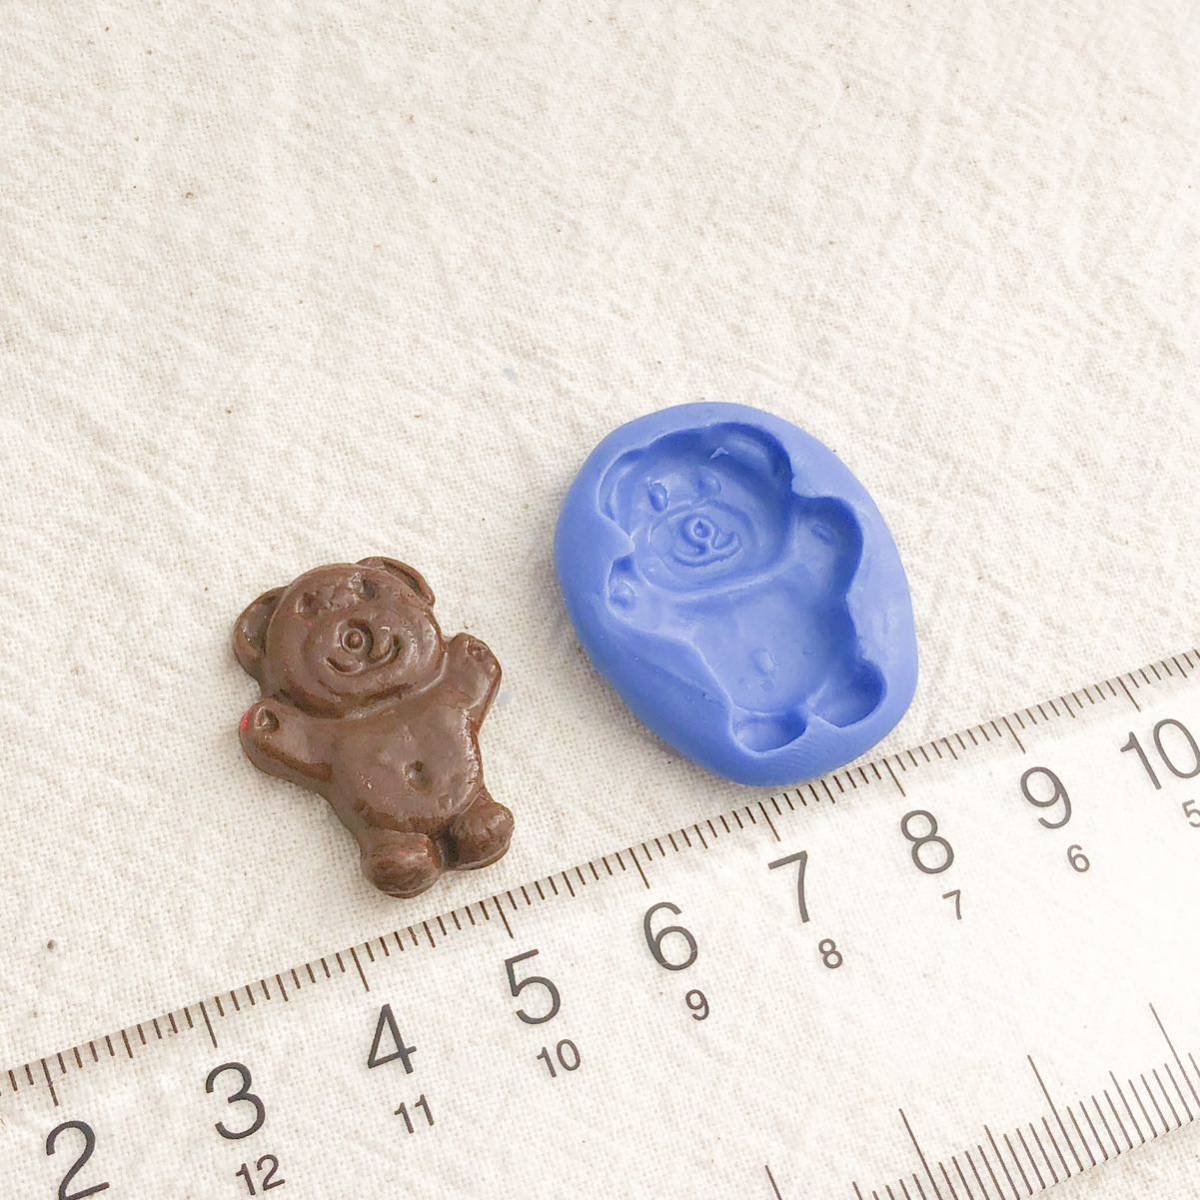 15 くまチョコレート型 クマ キャンディ スイーツ デコ パーツ 樹脂粘土 ブルーミックス シリコン モールド ハンドメイド ミニチュア_画像3